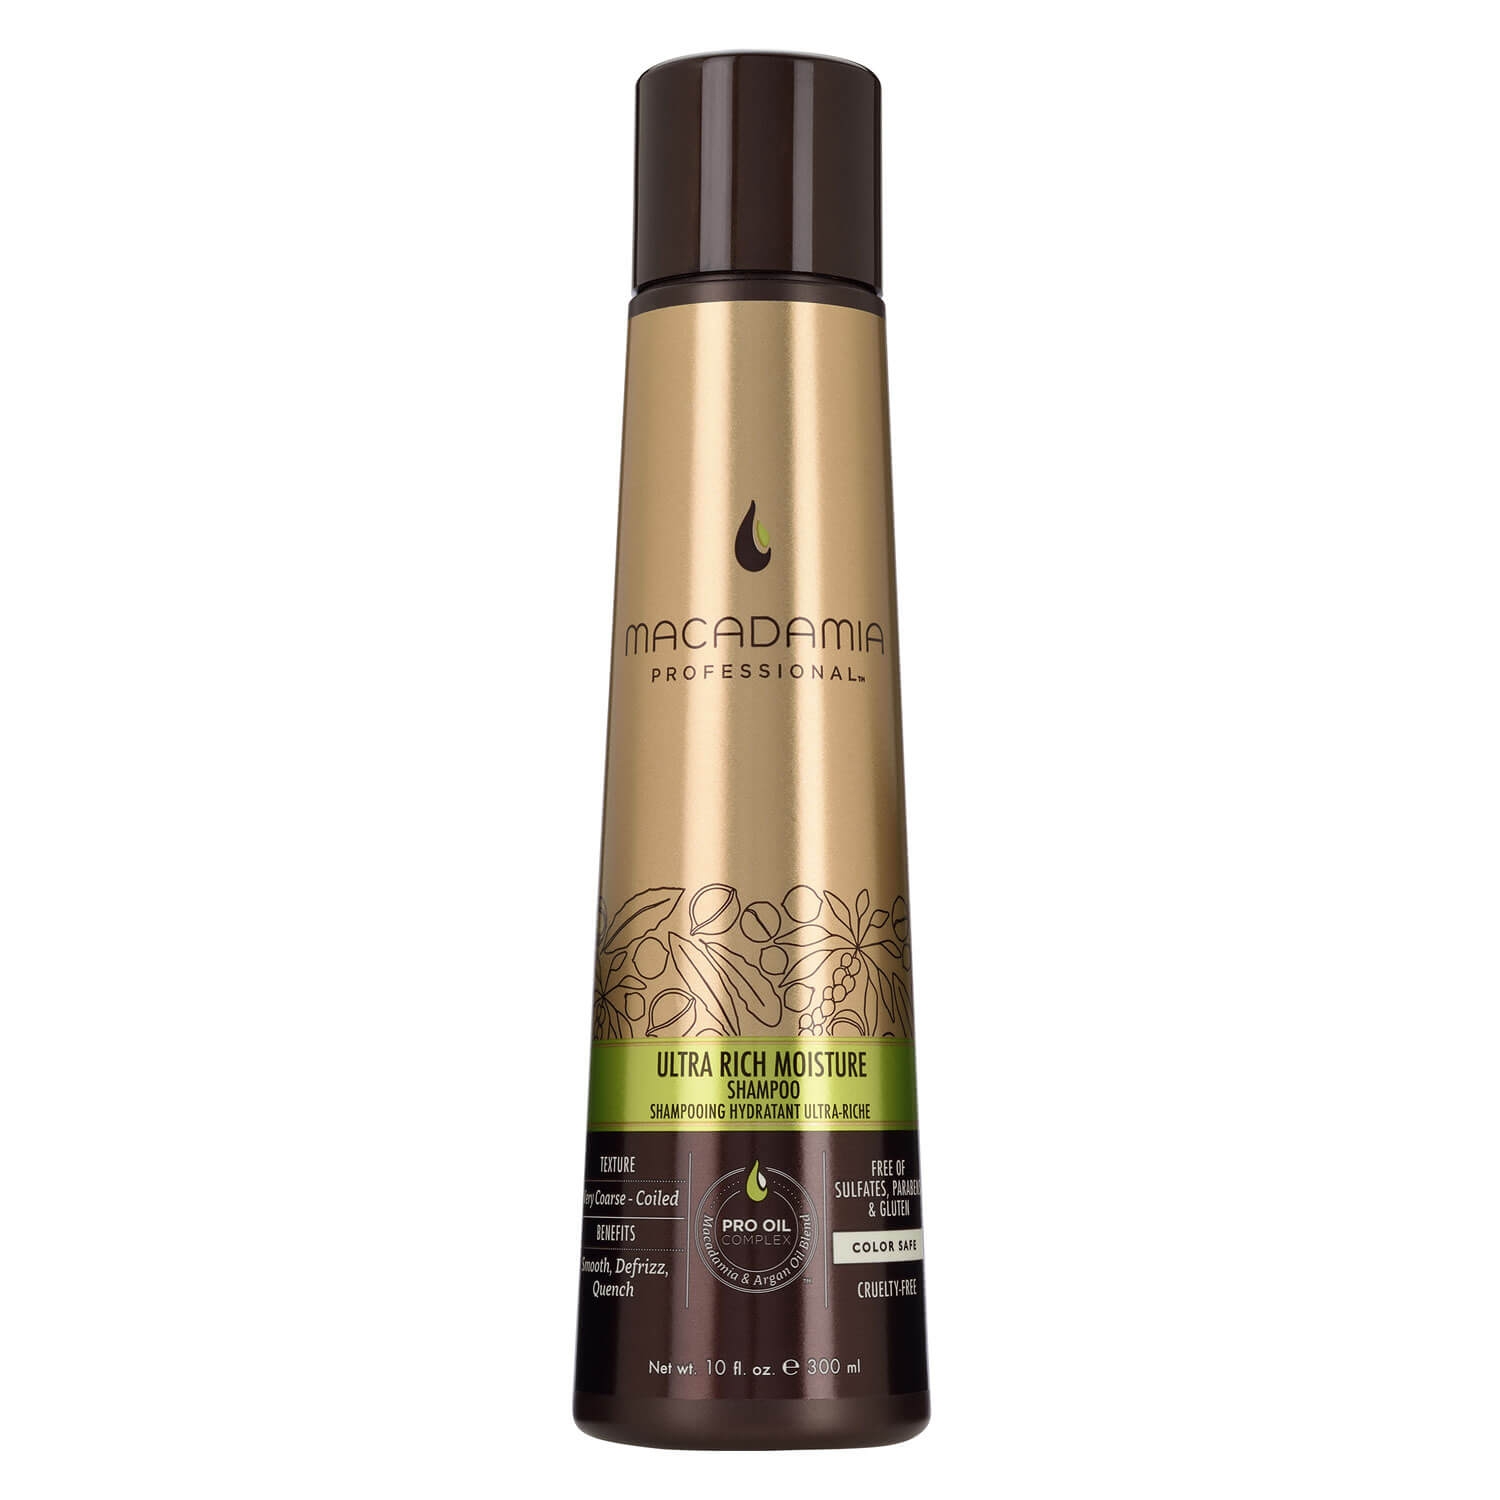 Produktbild von Macadamia - Ultra Rich Moisture Shampoo